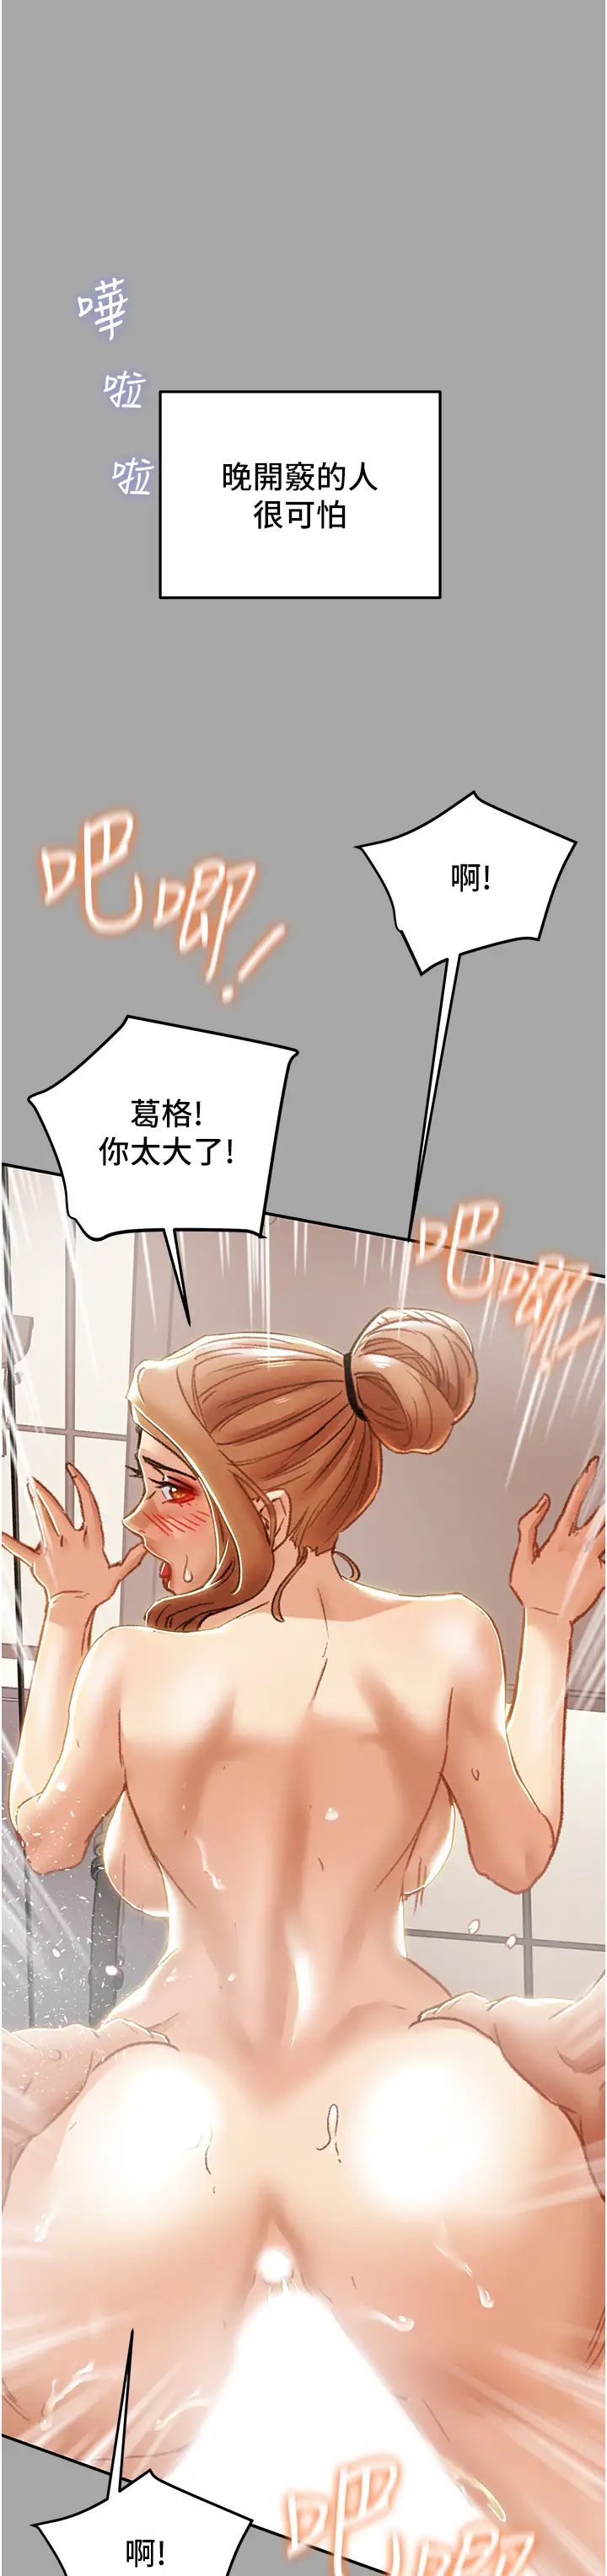 韩国污漫画 純情女攻略計劃 第53话释放在小穴内的快感 13